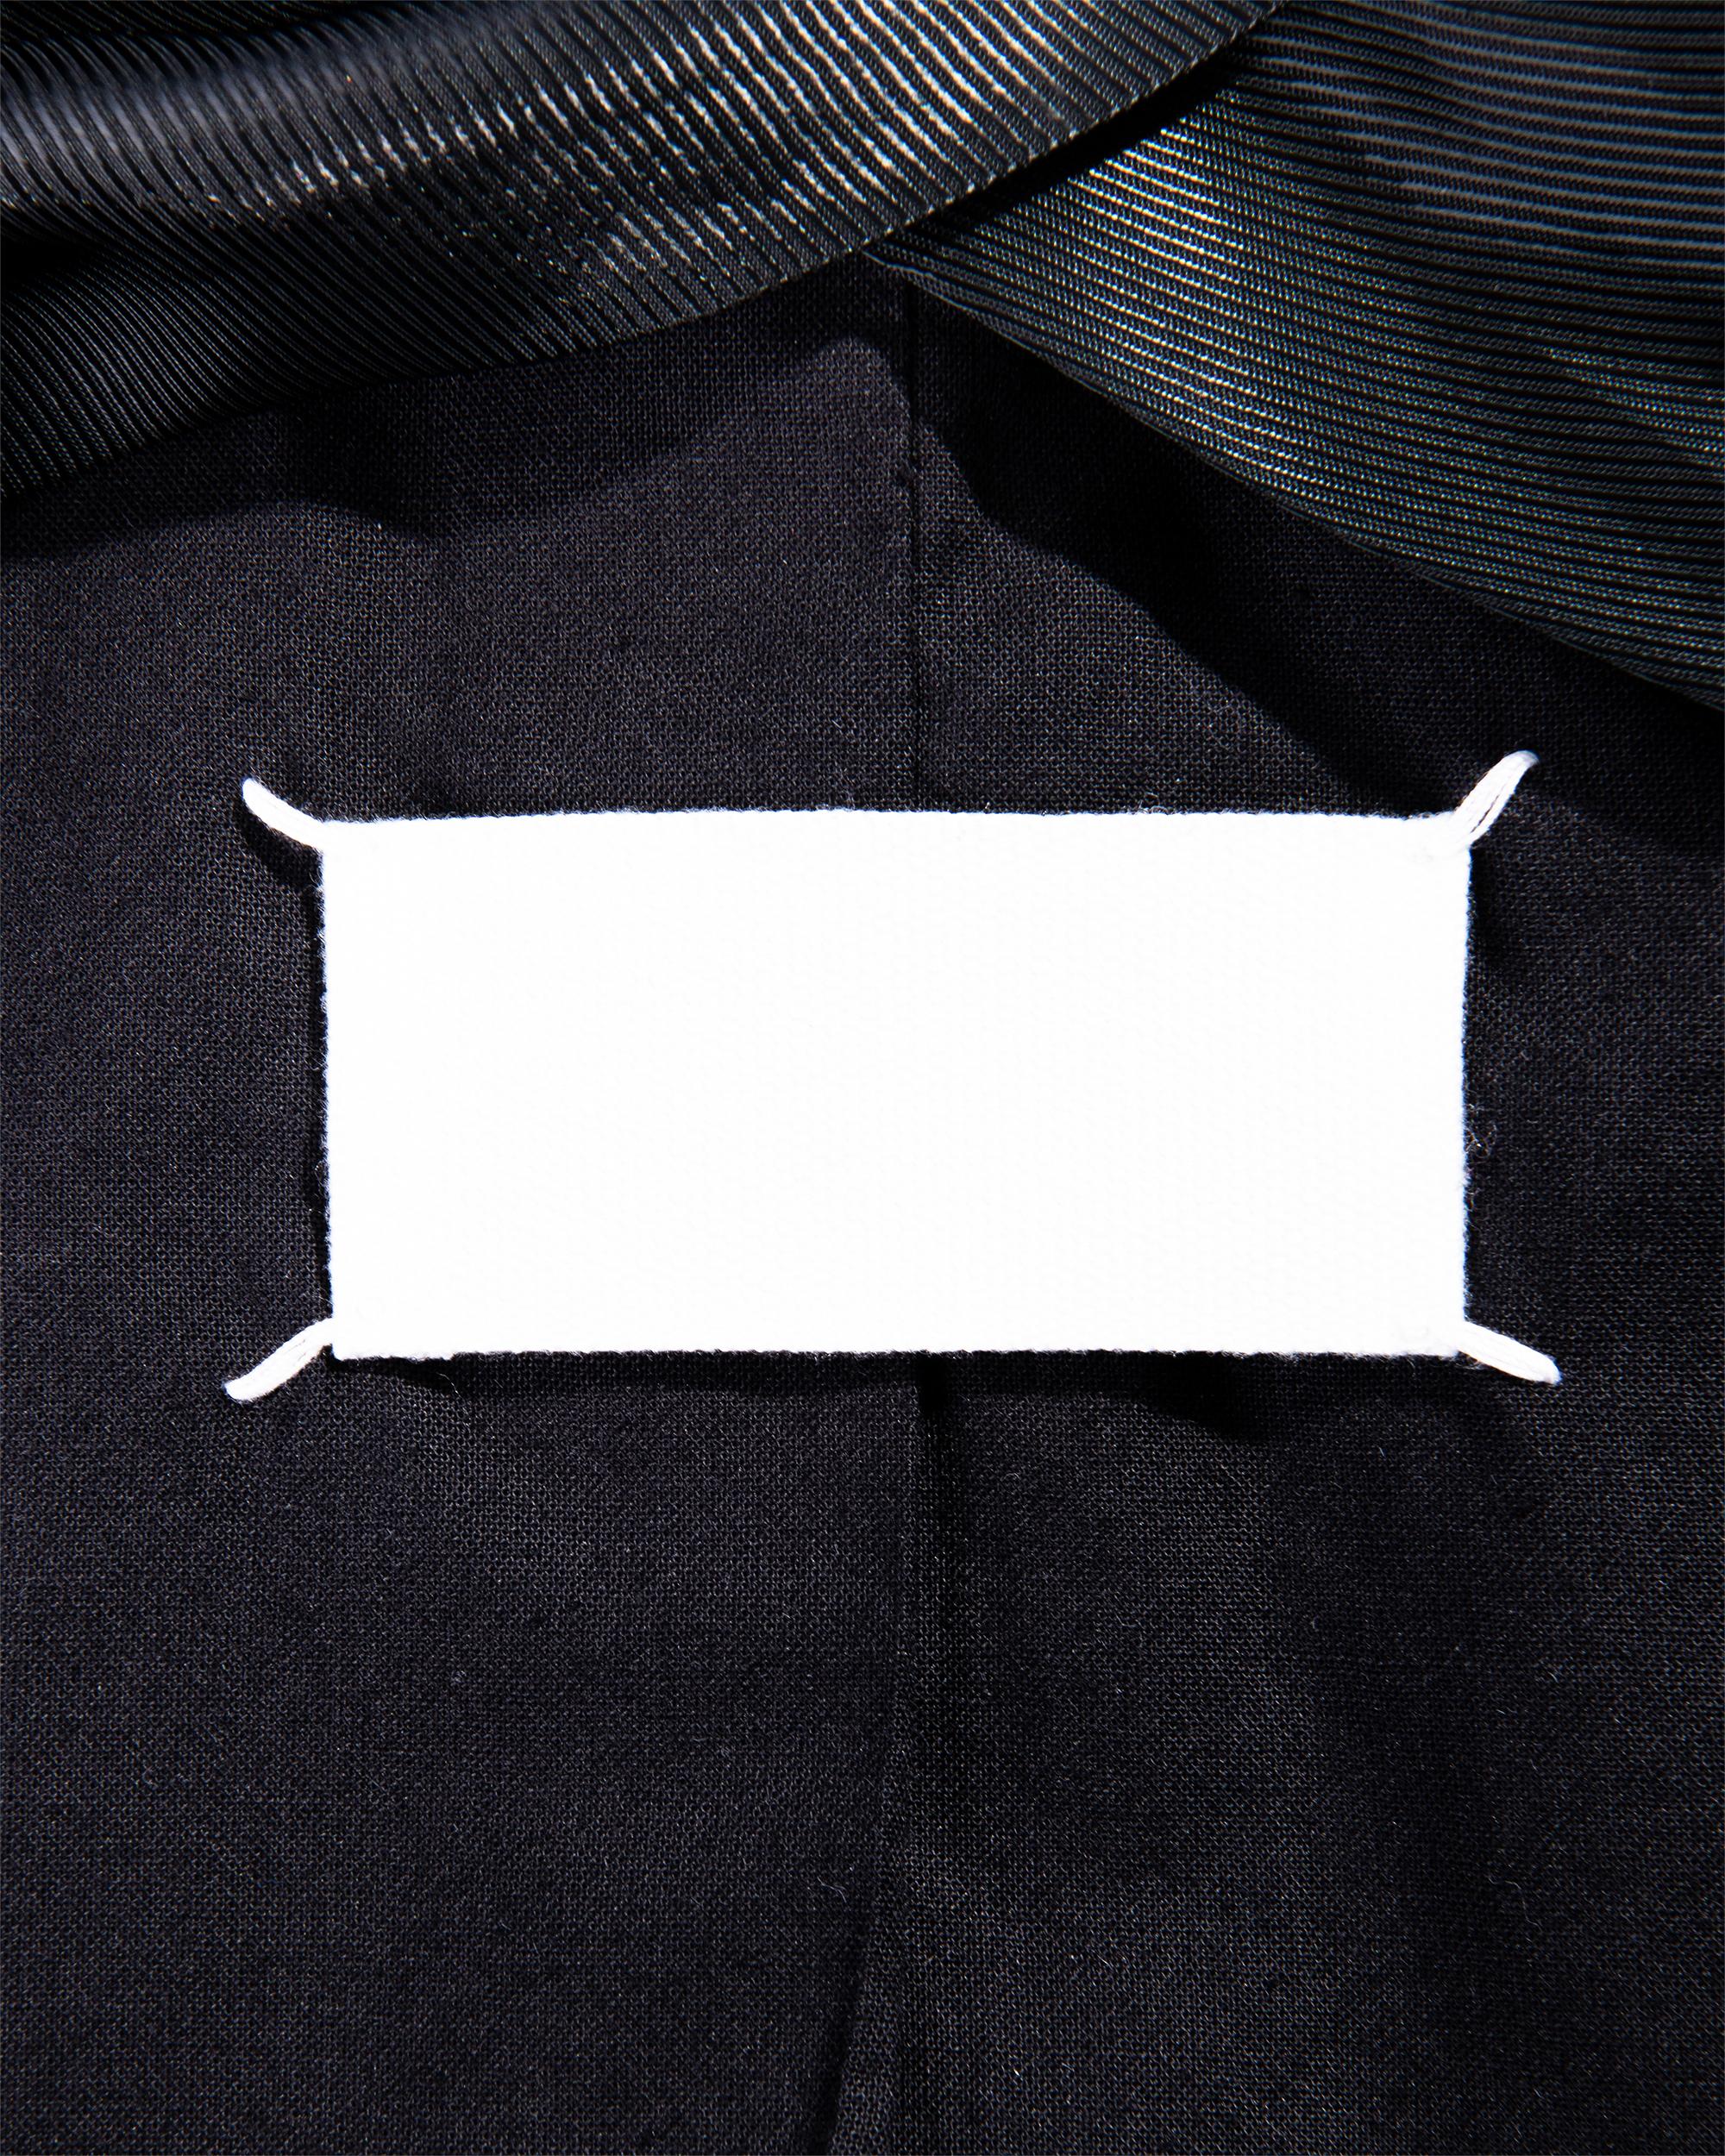 S/S 2002 Maison Martin Margiela Black Cropped Wool Tuxedo Jacket For Sale 3